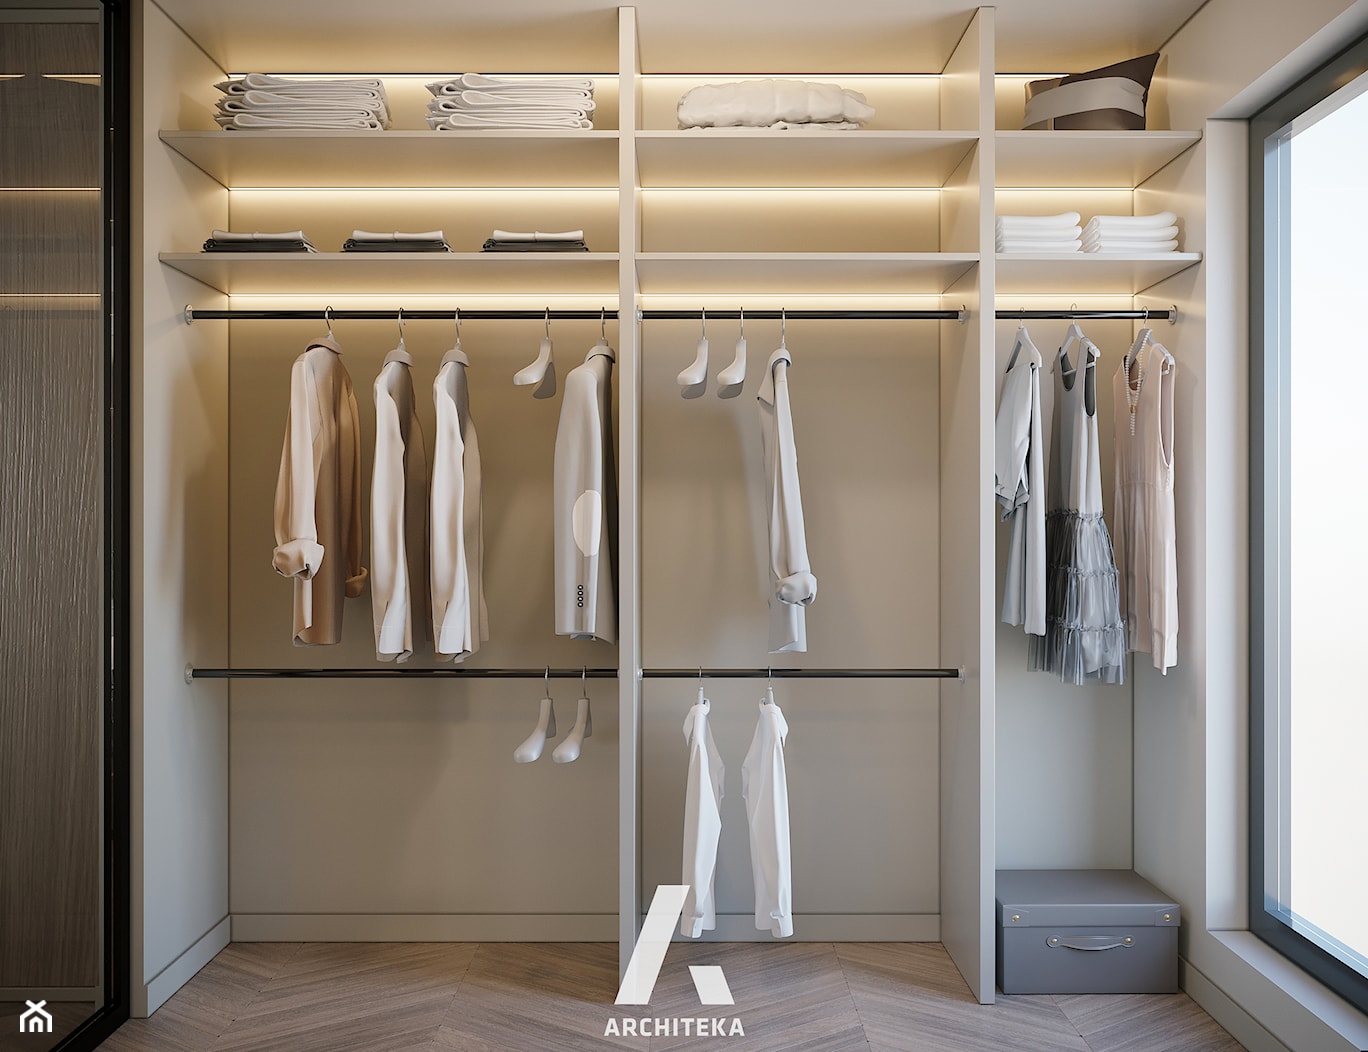 | PRZYDYMIONE WNĘTRZE | - Garderoba, styl minimalistyczny - zdjęcie od | ARCHITEKA | - Homebook